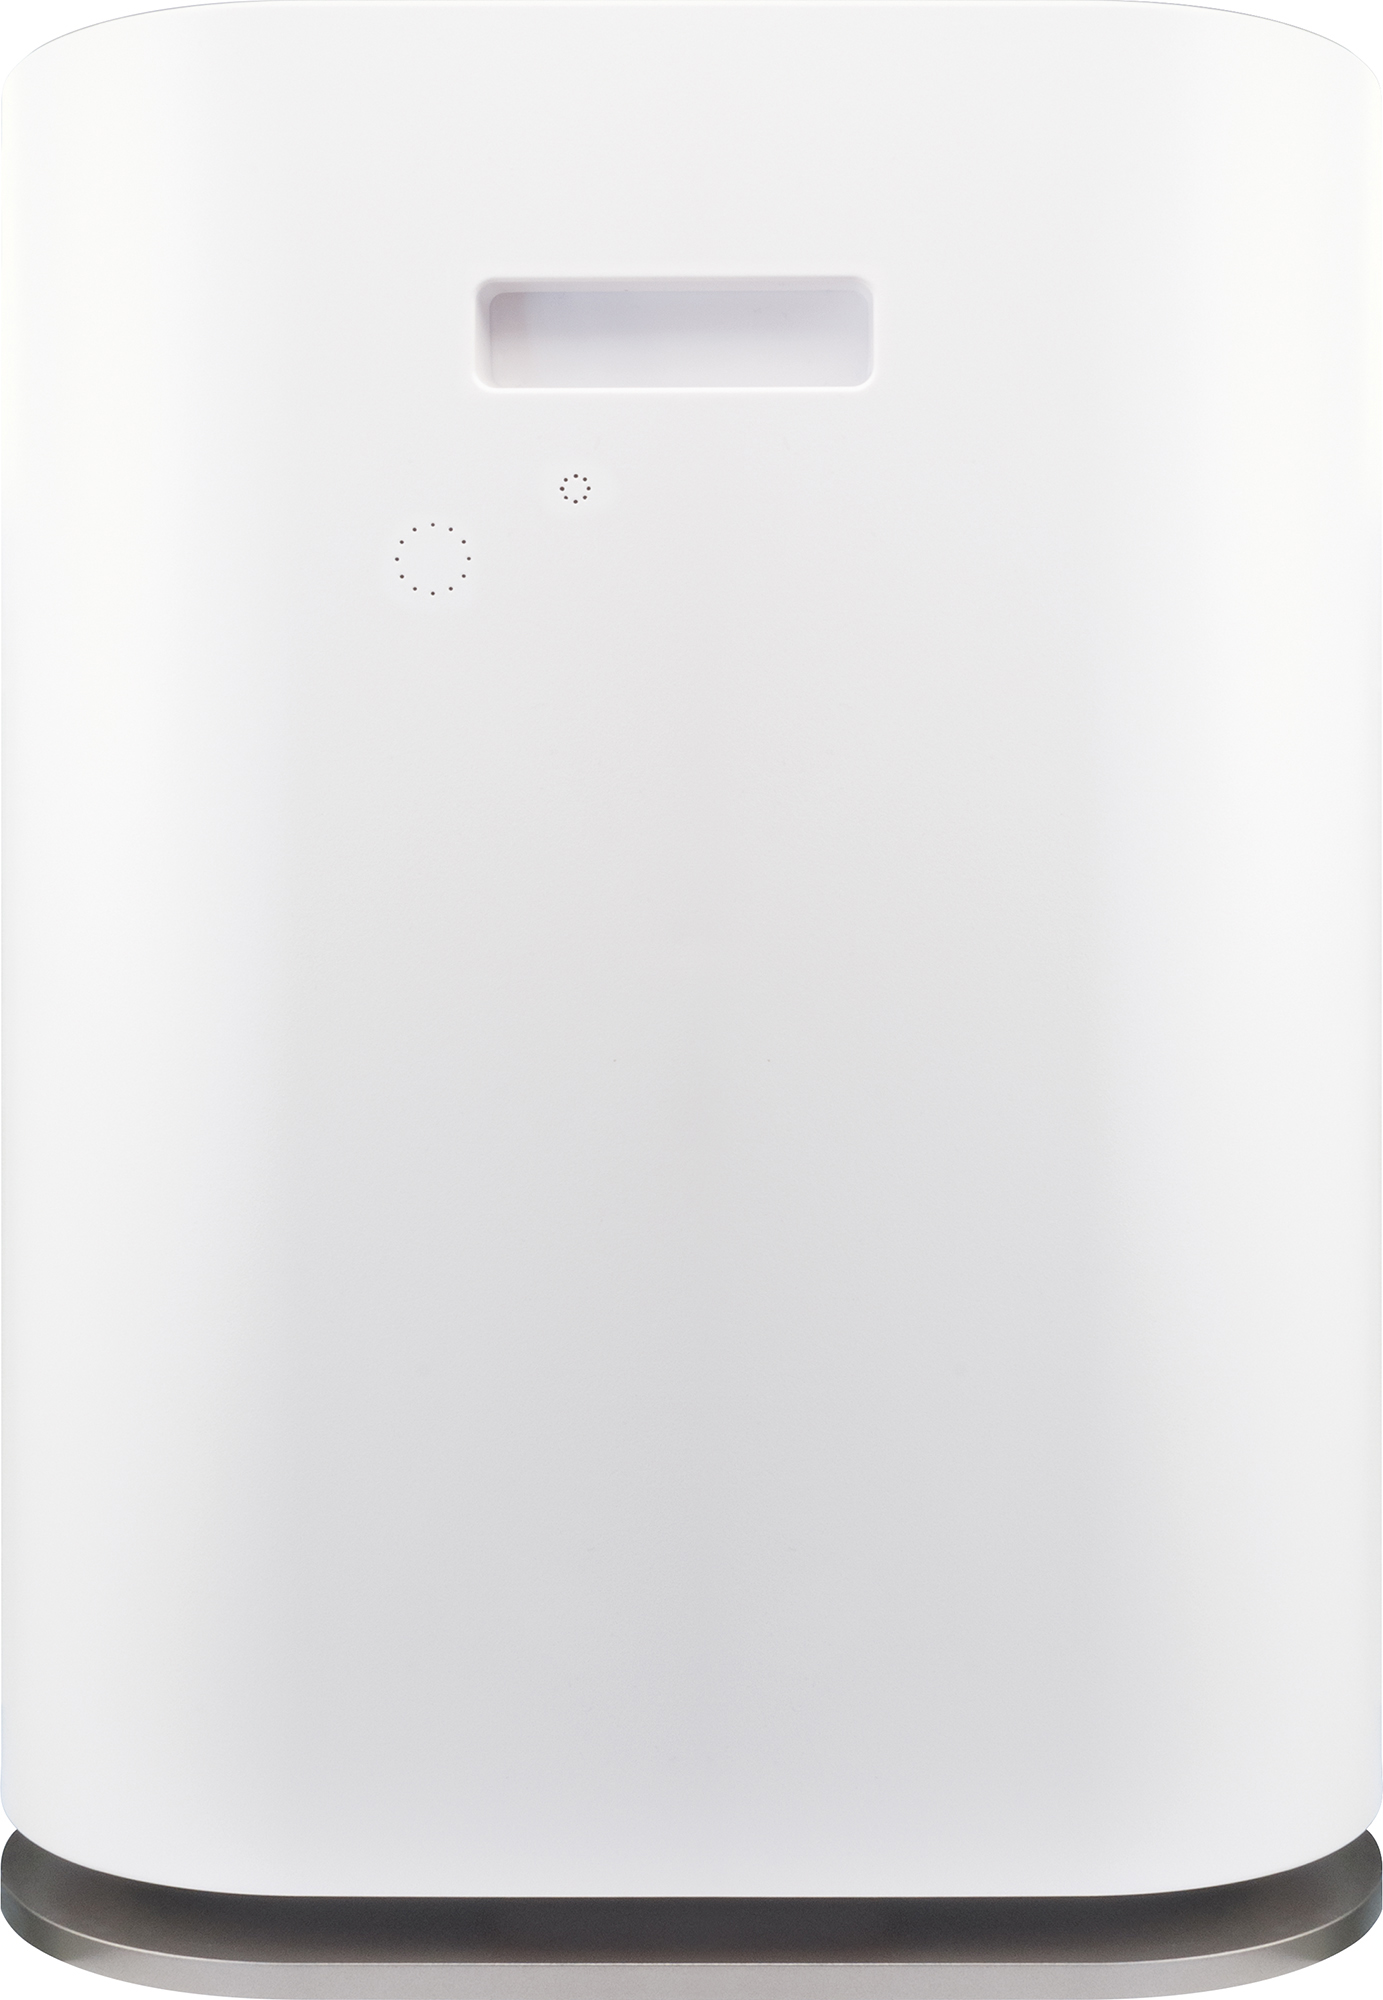 Luftreiniger Weiß SCHWAIGER Watt) -658019- (60